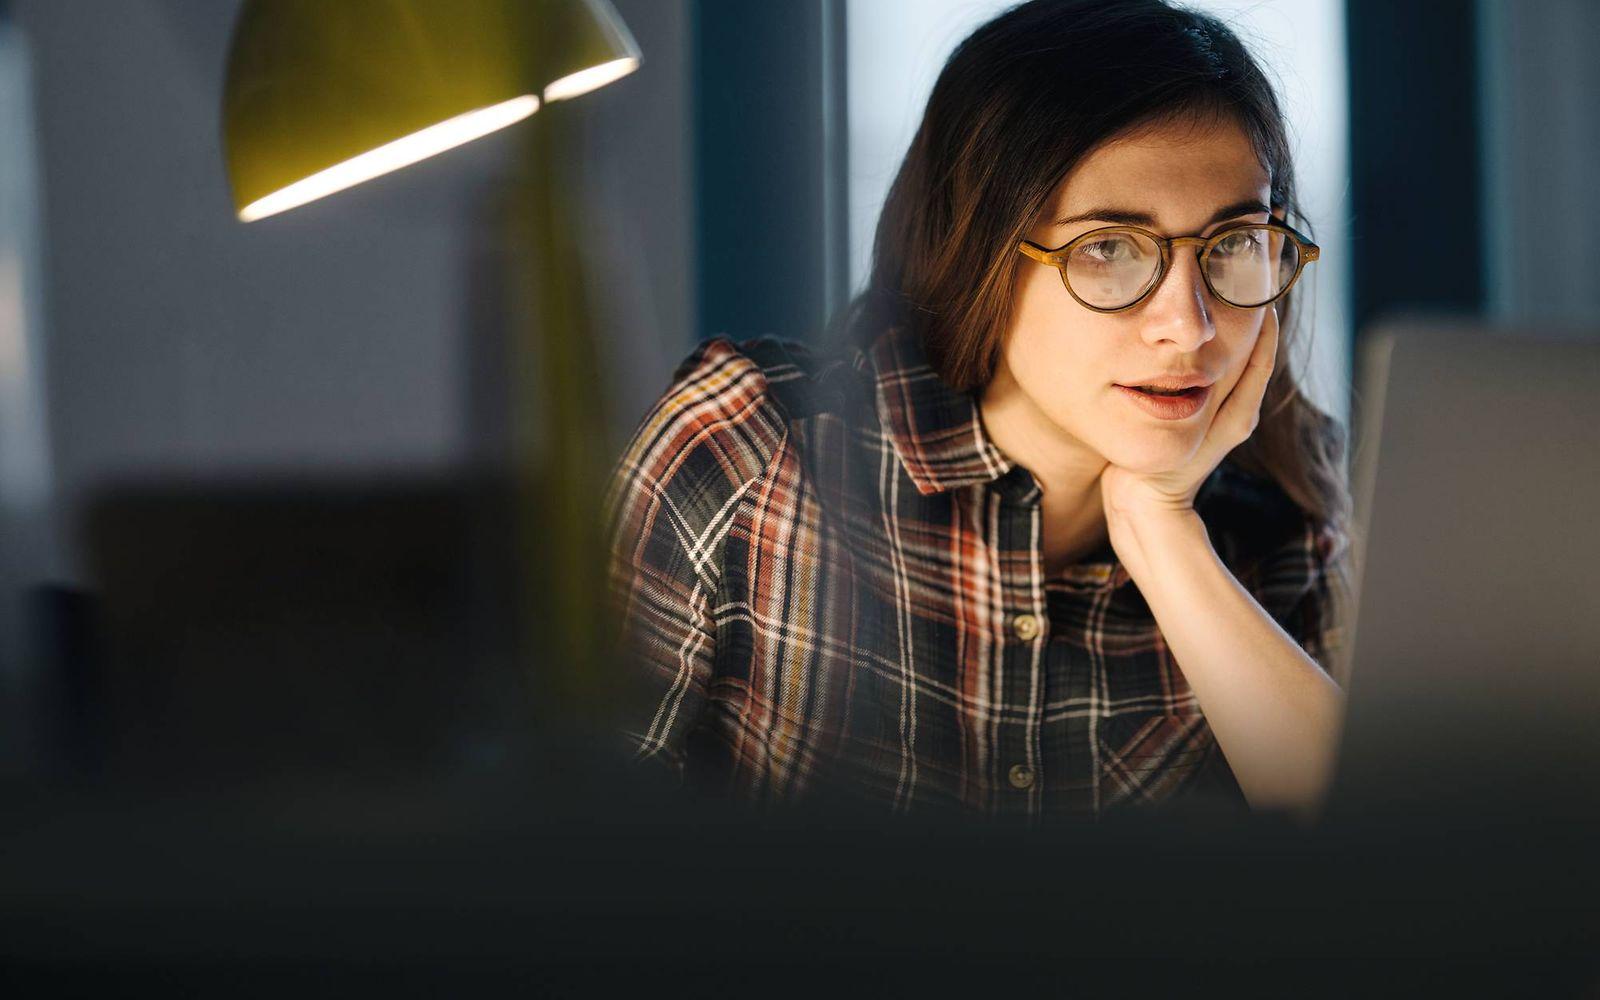 Bild: Junge Frau mit Brille liest etwas auf dem Laptop im Arbeitszimmer.